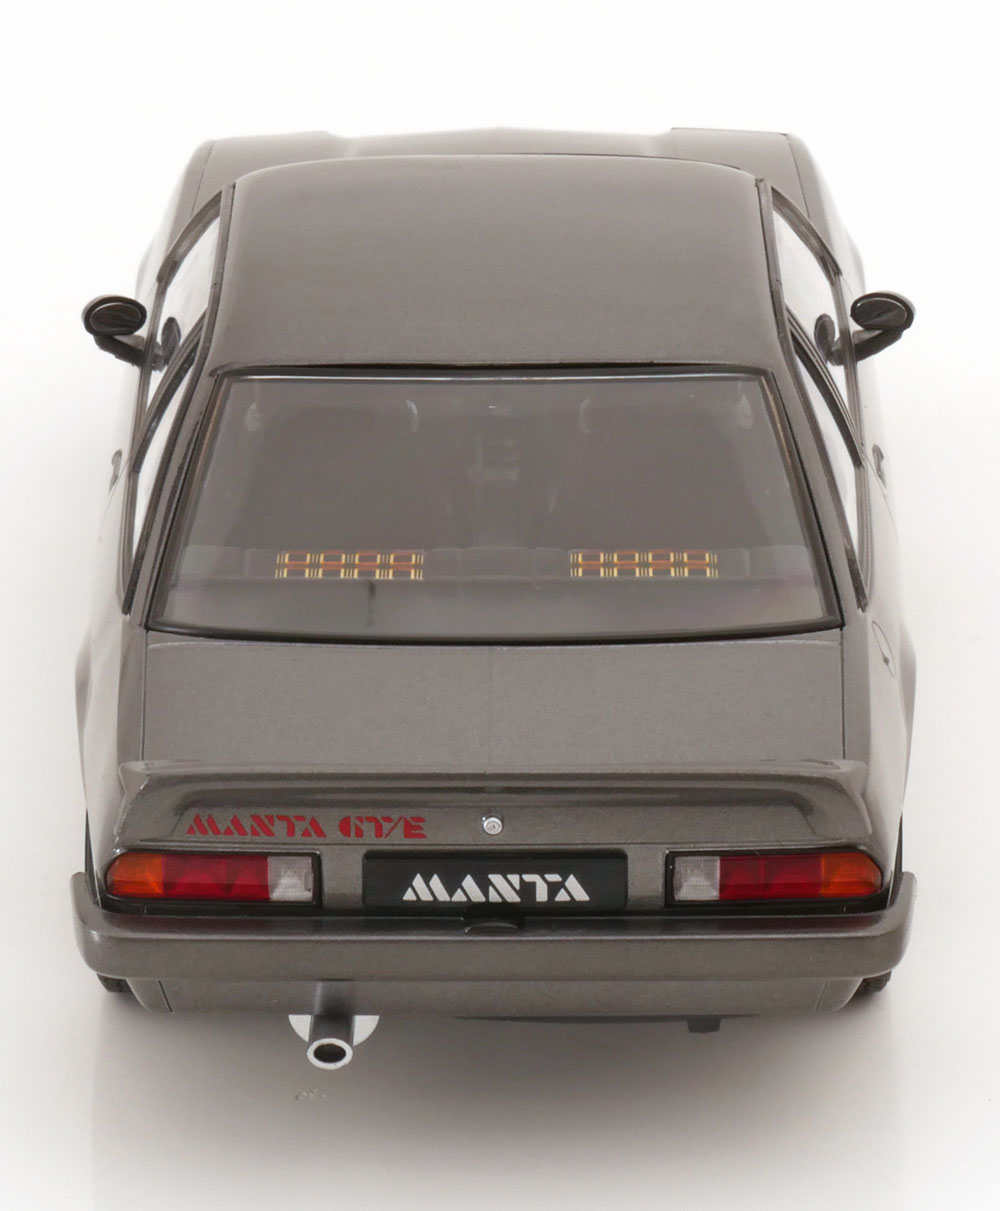 1:18 Norev Opel Manta GT/E 1982 greymetallic